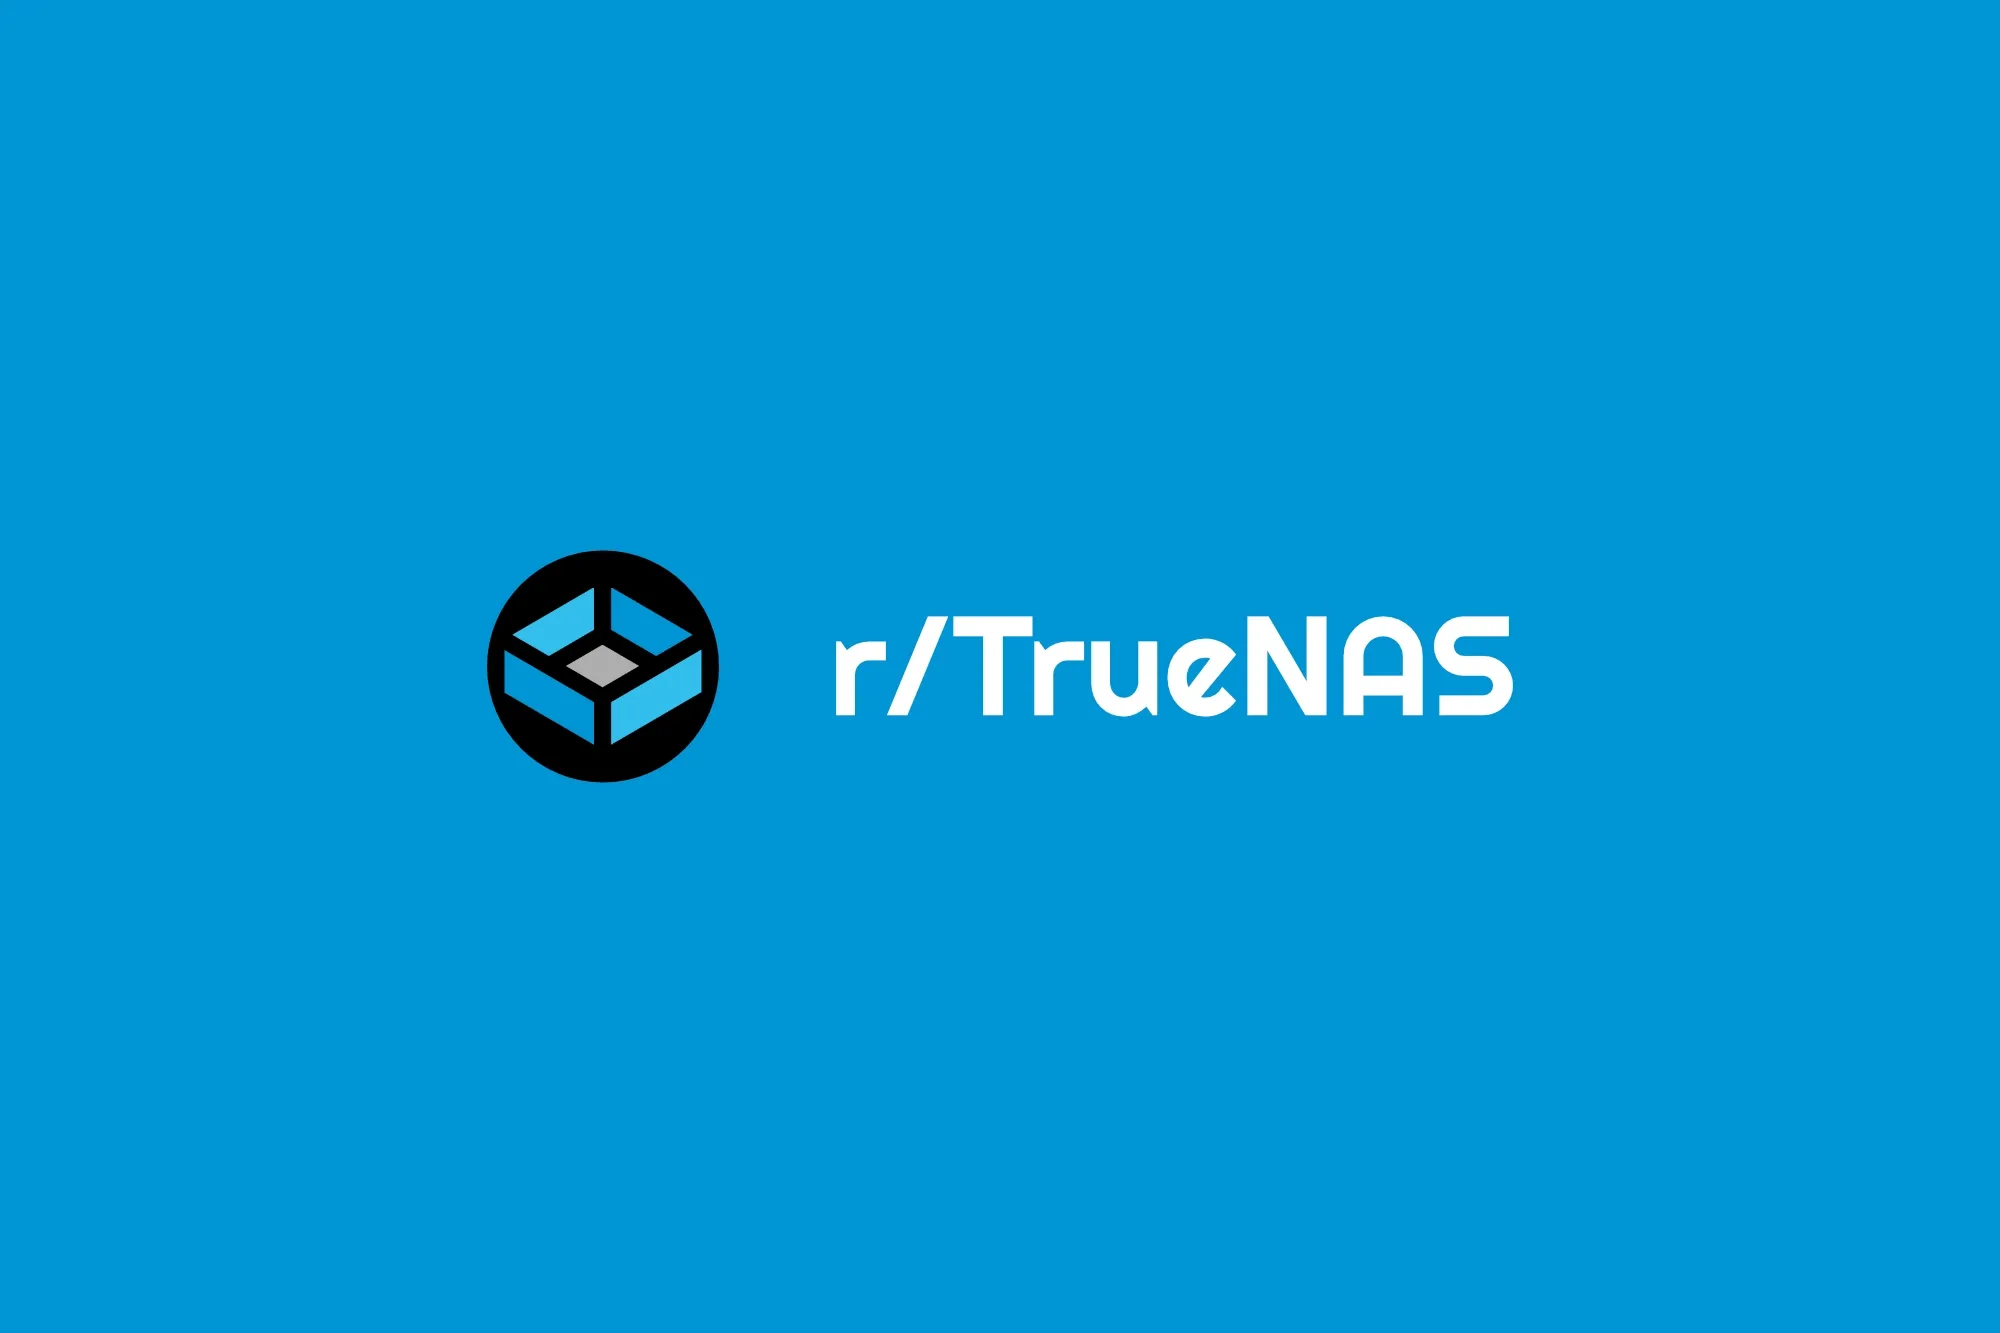 r/TrueNAS: truenas scale as docker server